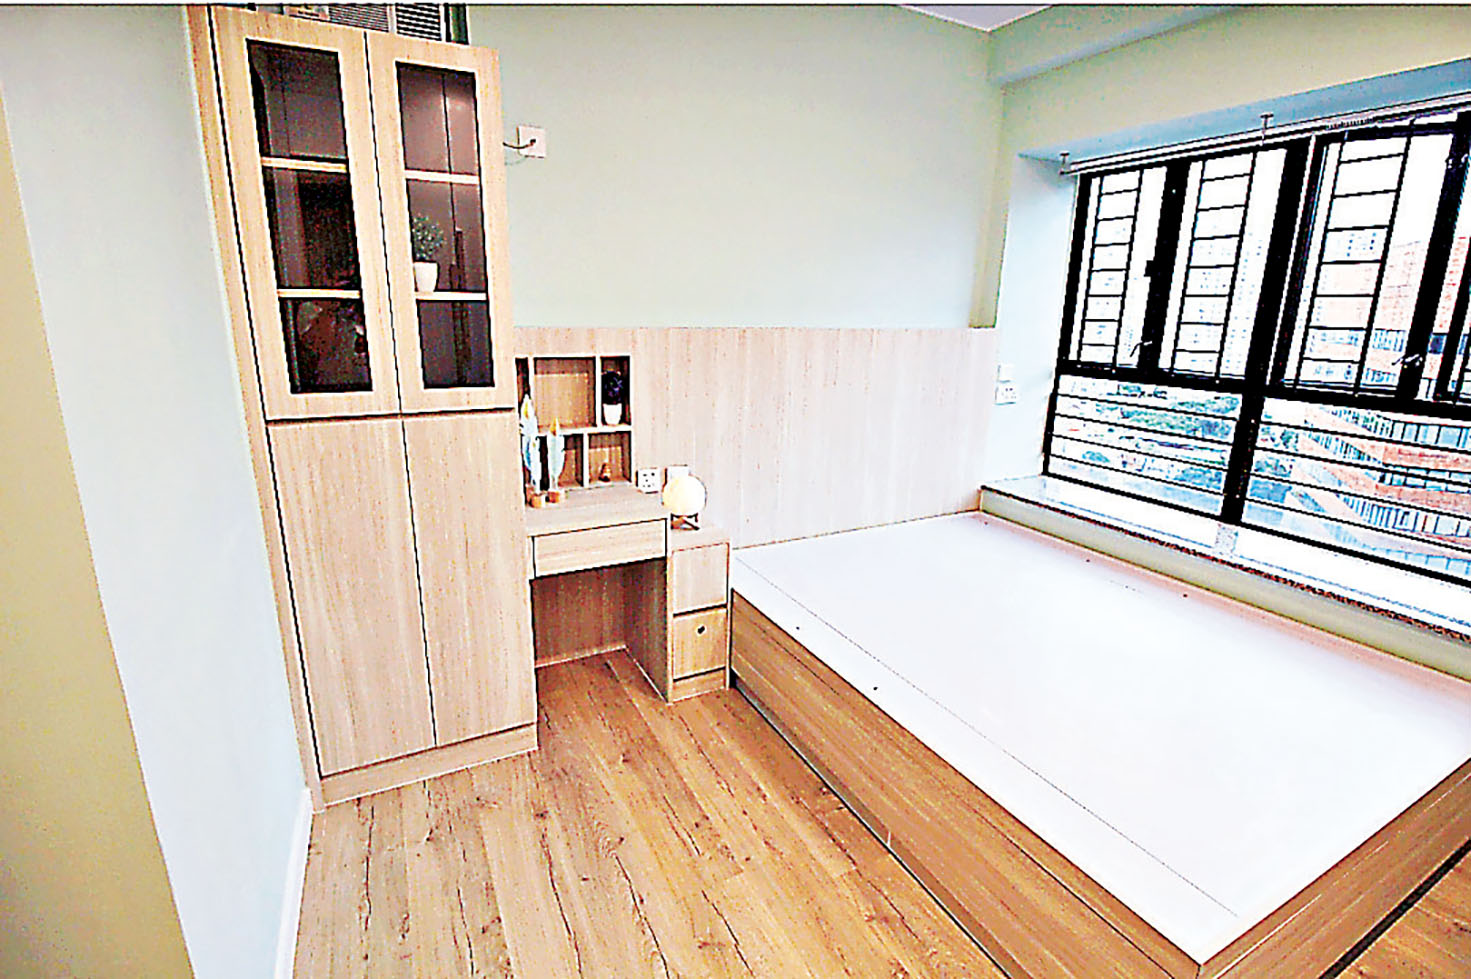 ■睡房的裝飾櫃、梳妝枱、大床以至地板都是統一的條紋木色。